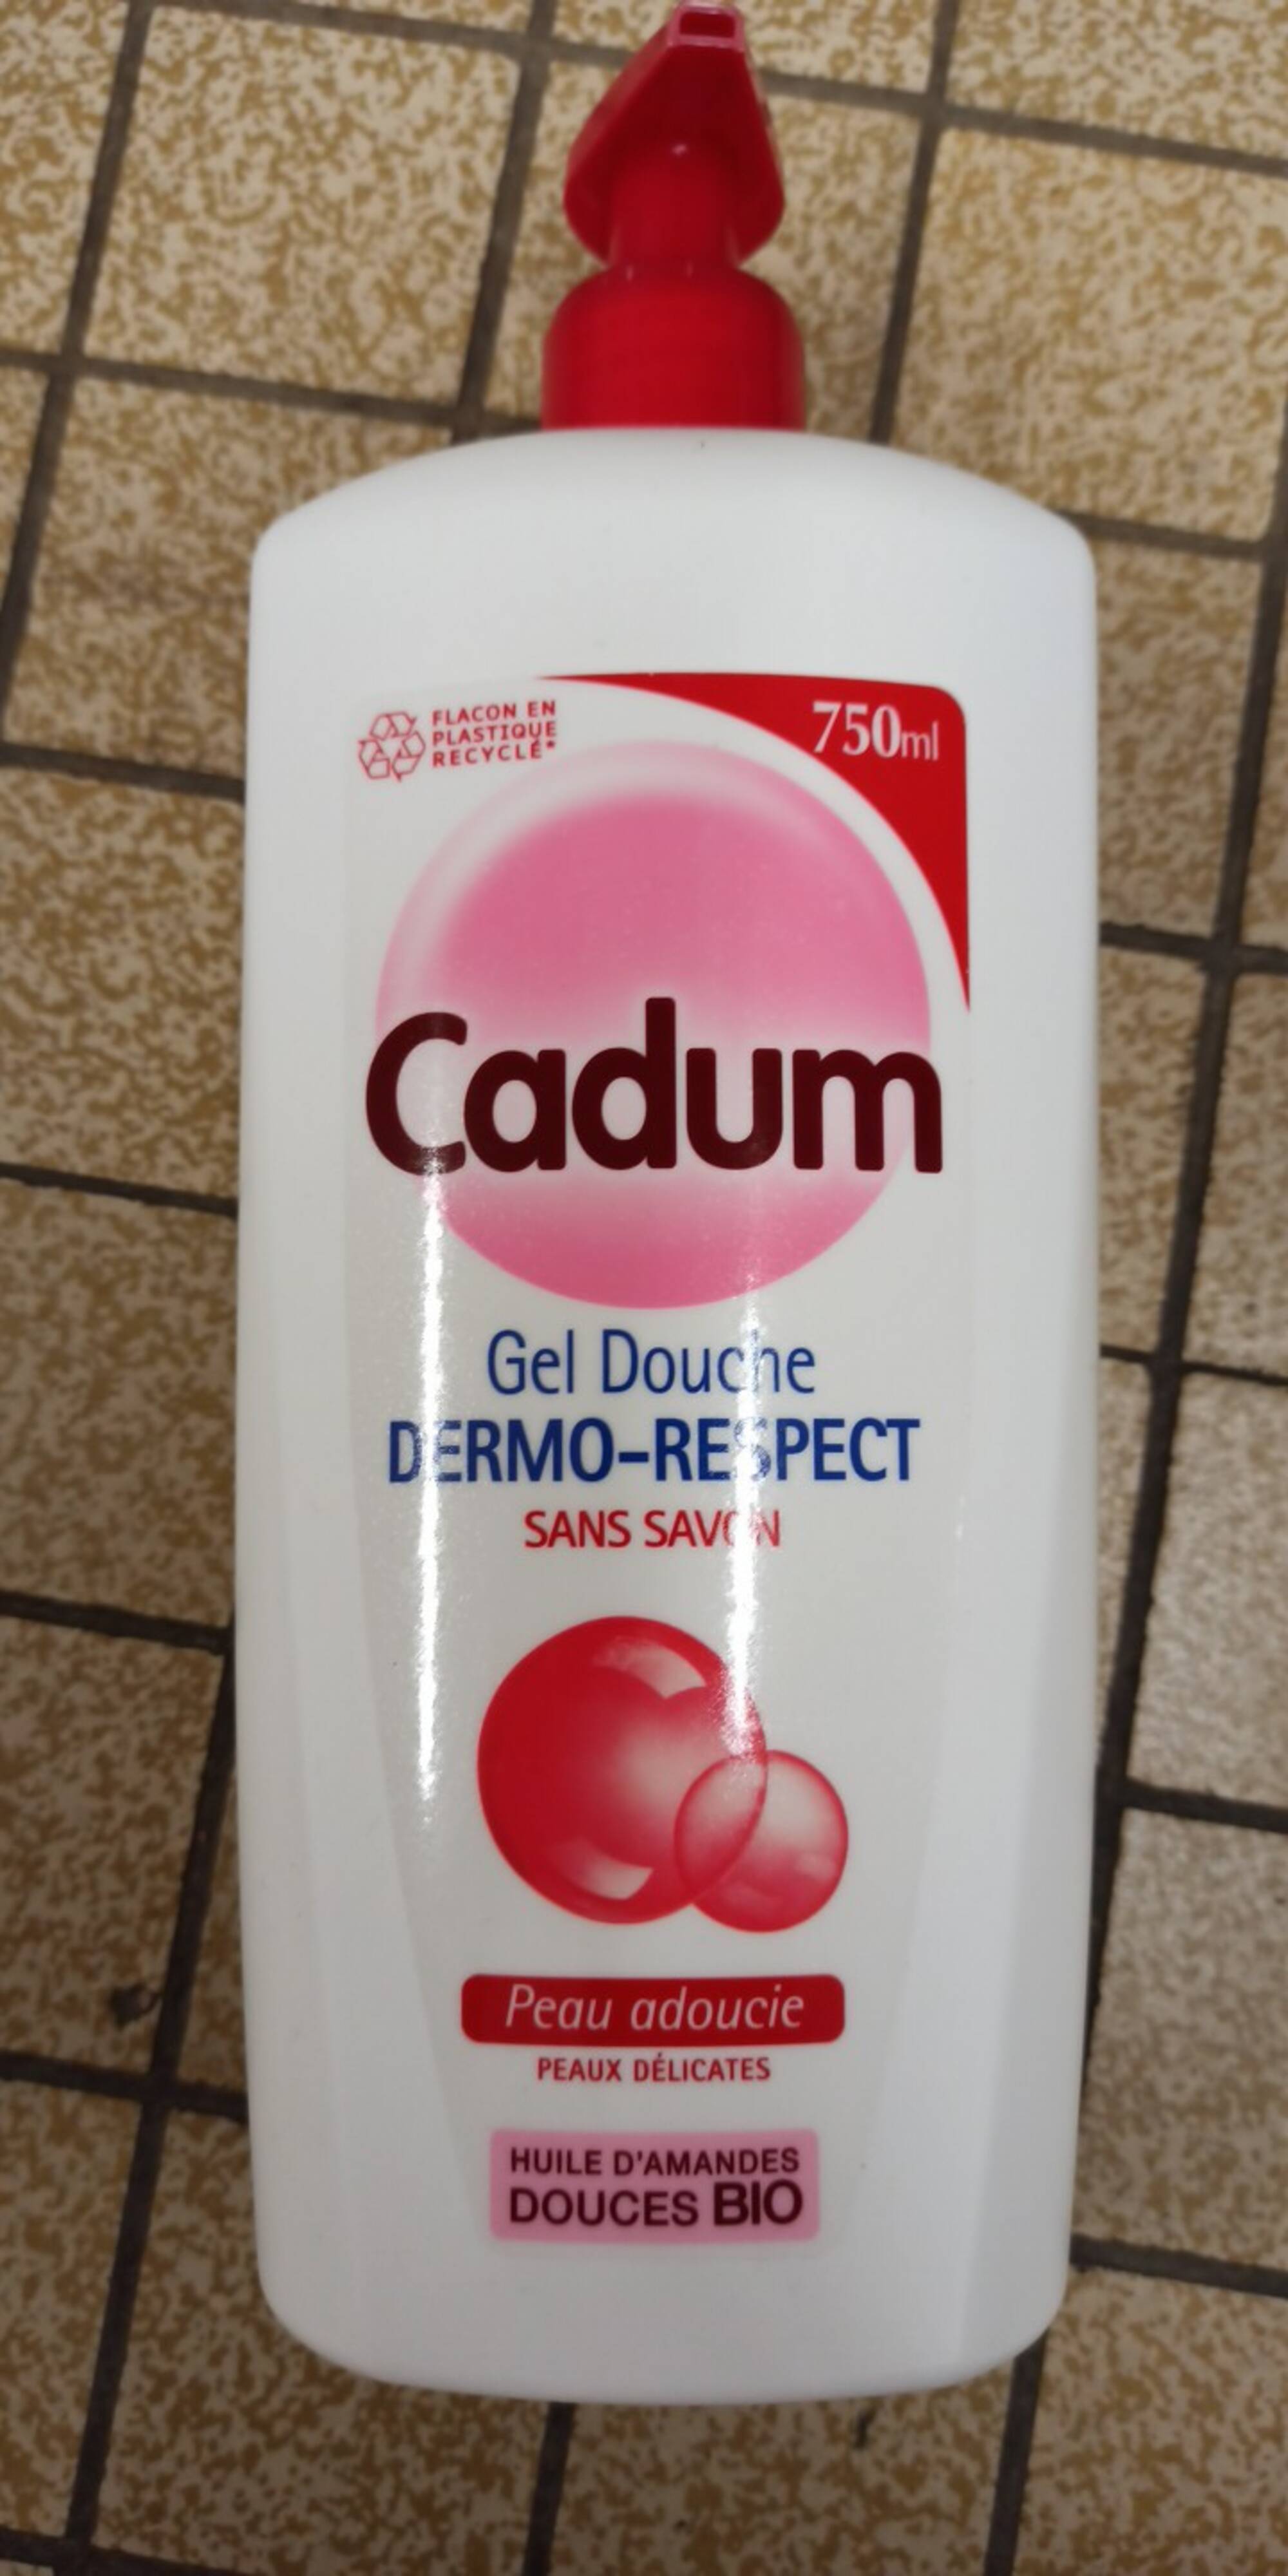 CADUM - Gel douche dermo-respect sans savon